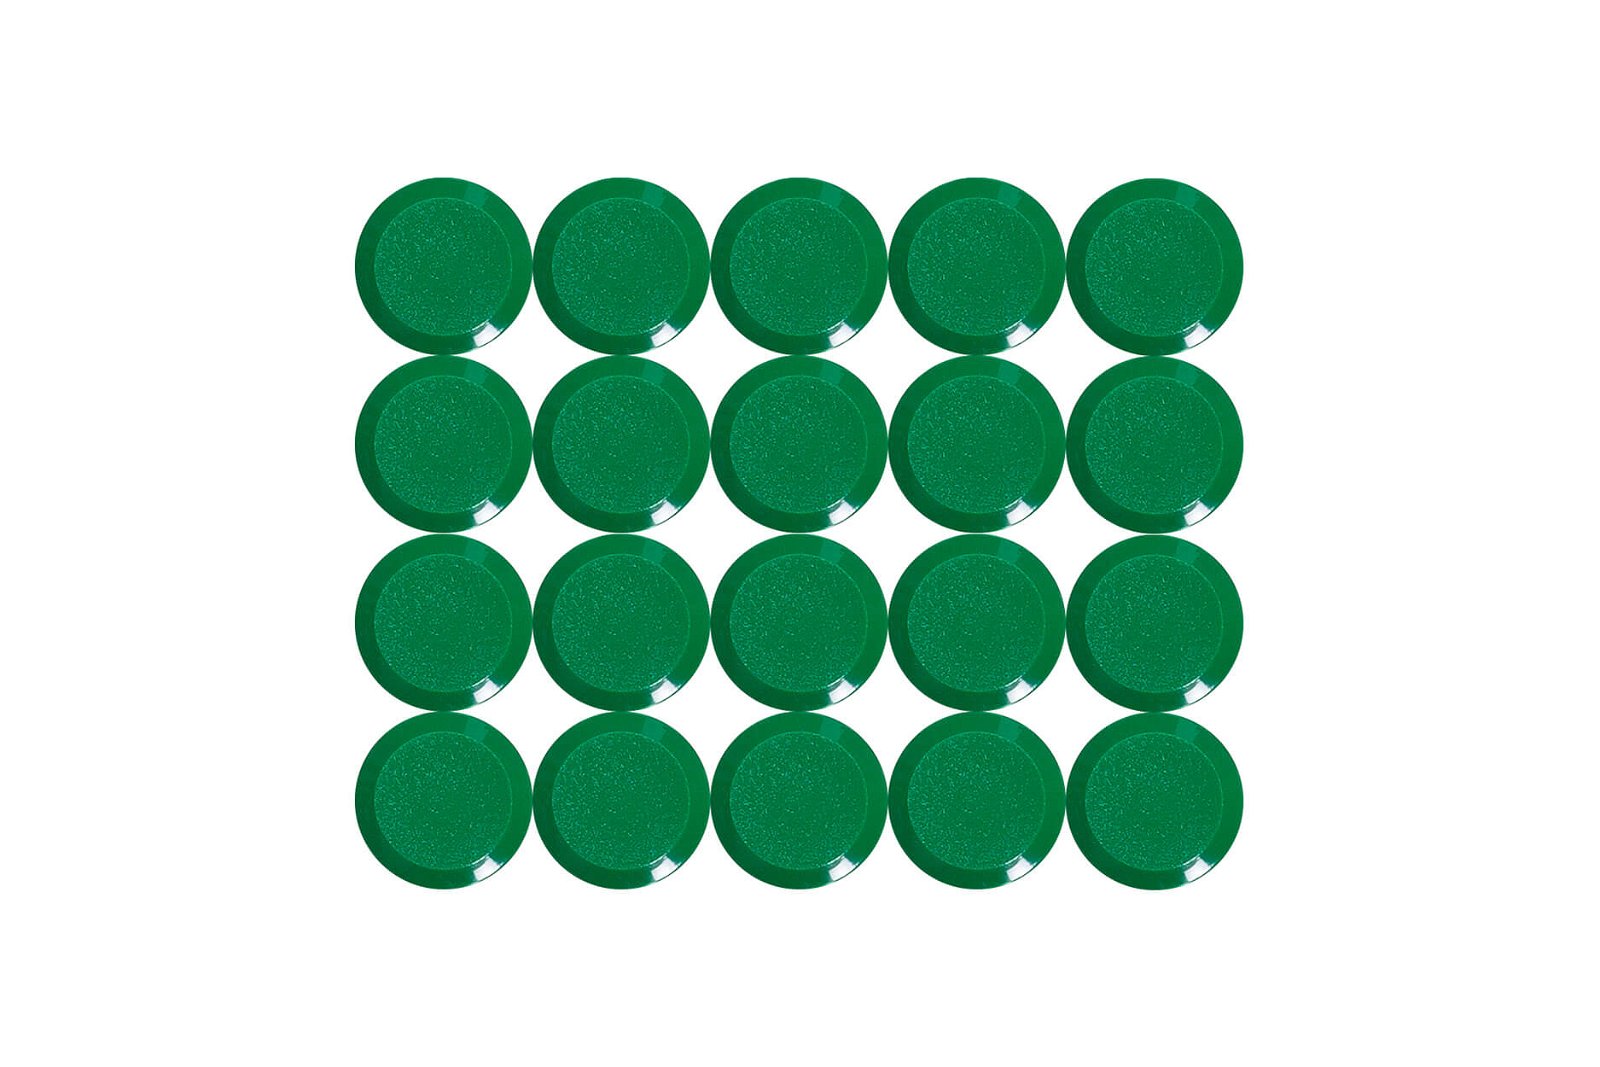 Facetterand-Magnet MAULpro Ø 15 mm, 0,17 kg, 20 St./Set, grün